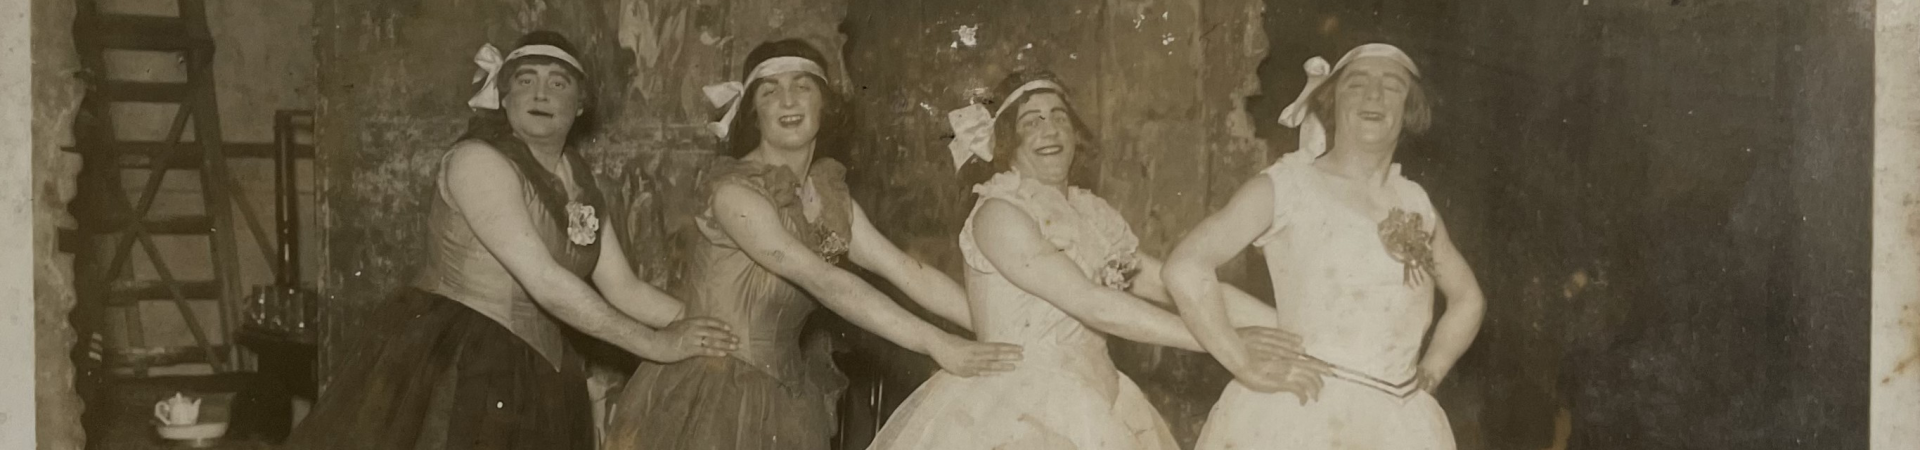 Vun Meddernacks bes Morgens - Divertissementchen 1929 - Ballett bei der Probe